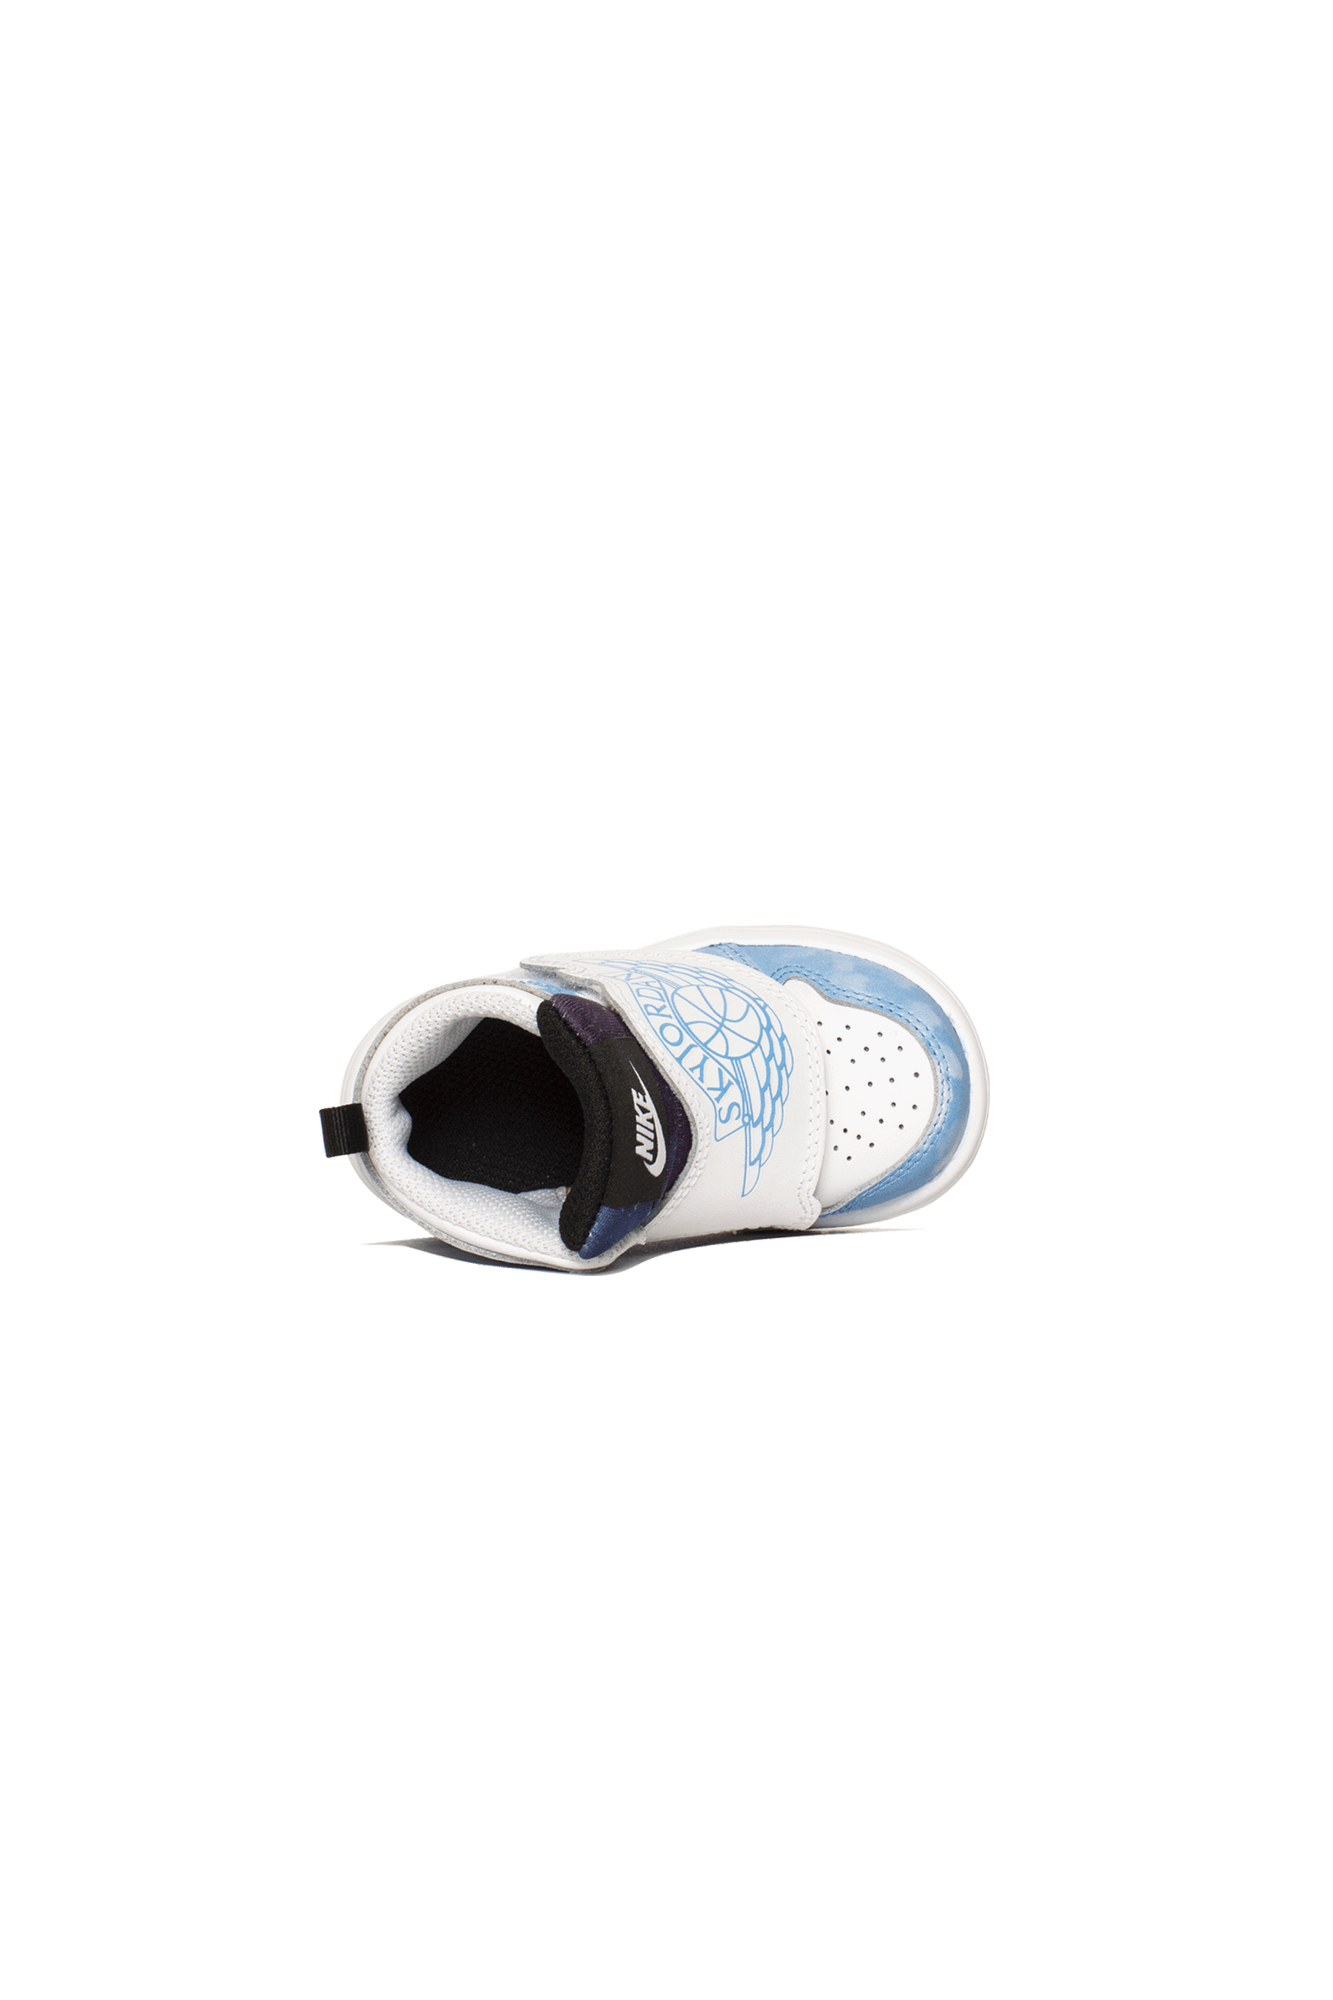 Jordan Brand Sneakers 1 Retro Sky "Fearless" PS Blu CT2477-#000#400#10.5c - One Block Down